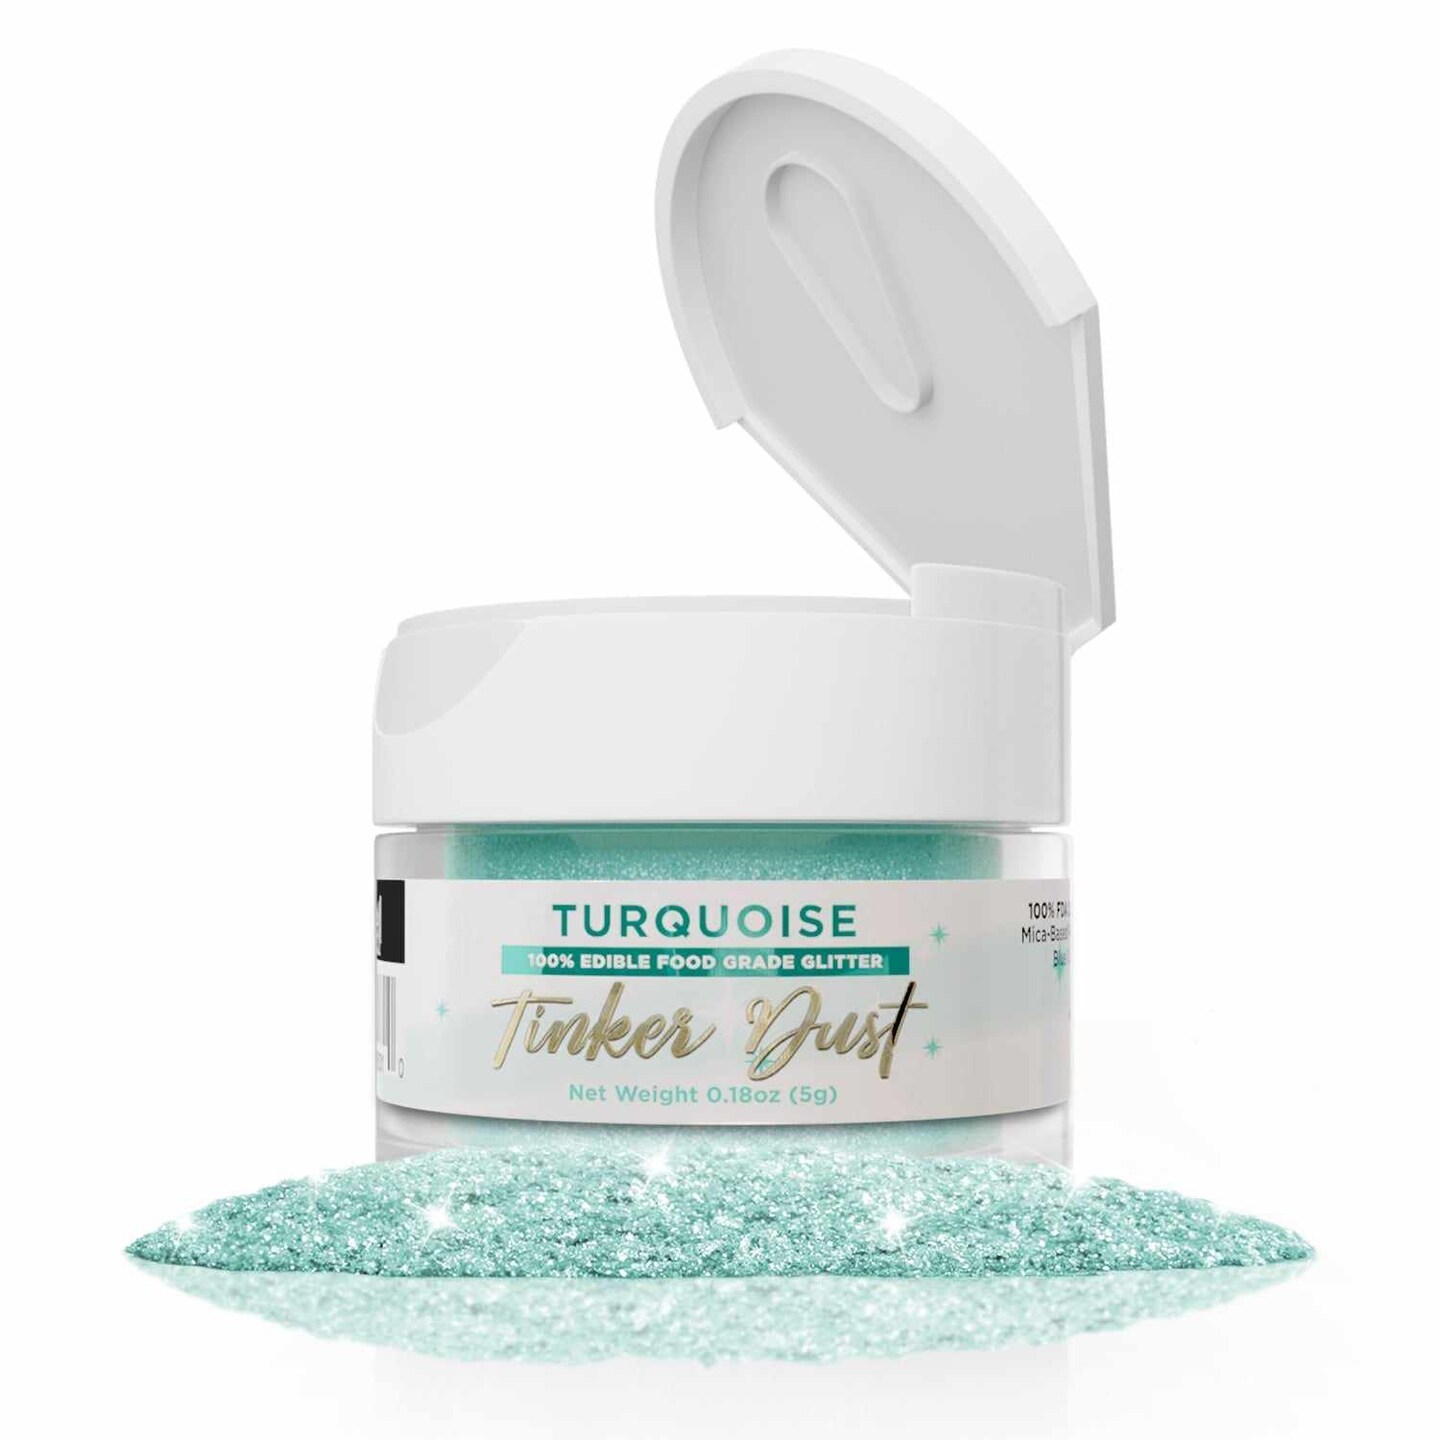 Turquoise Edible Glitter | Tinker Dust&#xAE; 5 Grams